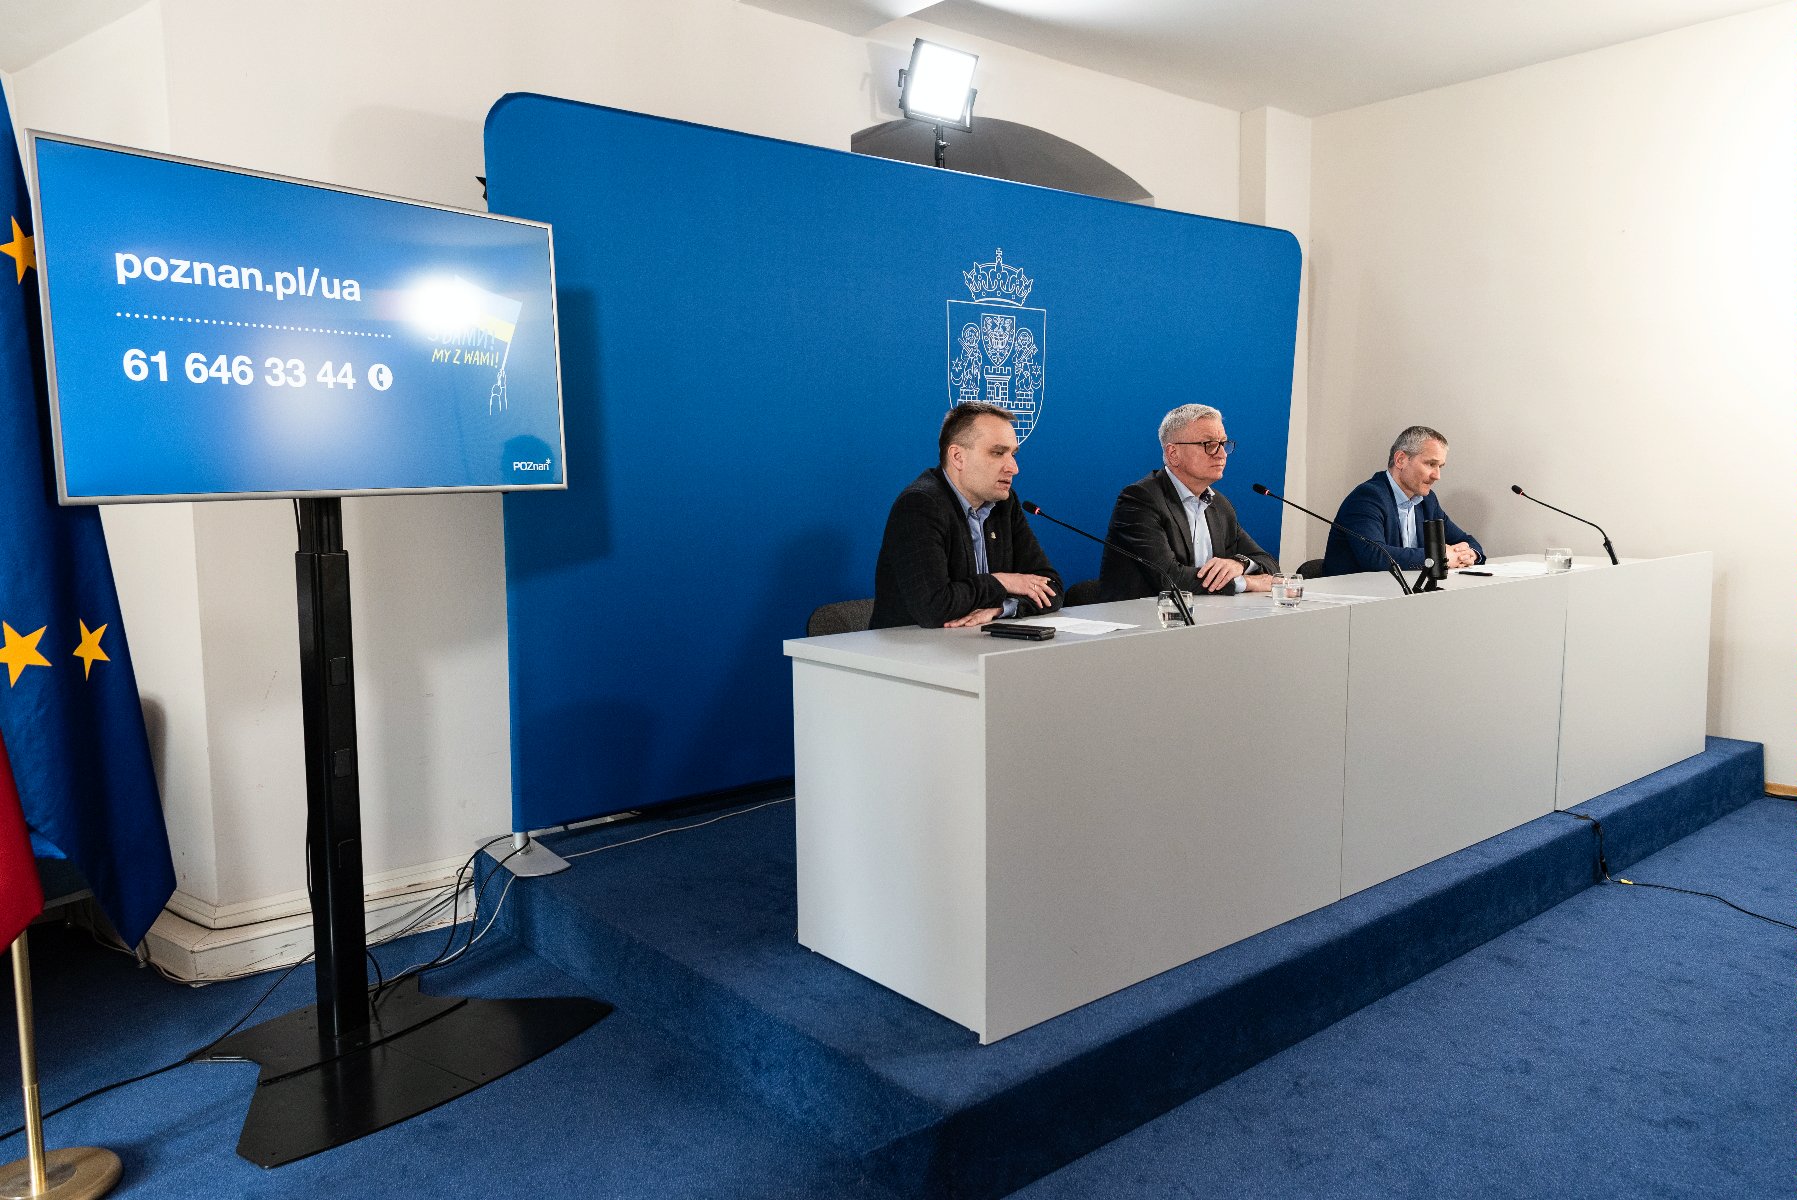 Wnętrze sali konferencyjnej, za stołem Jacek Jaśkowiak, prezydent Poznania i jego dwaj zastępcy, za nimi granatowa ścianka z herbem Miasta - grafika artykułu